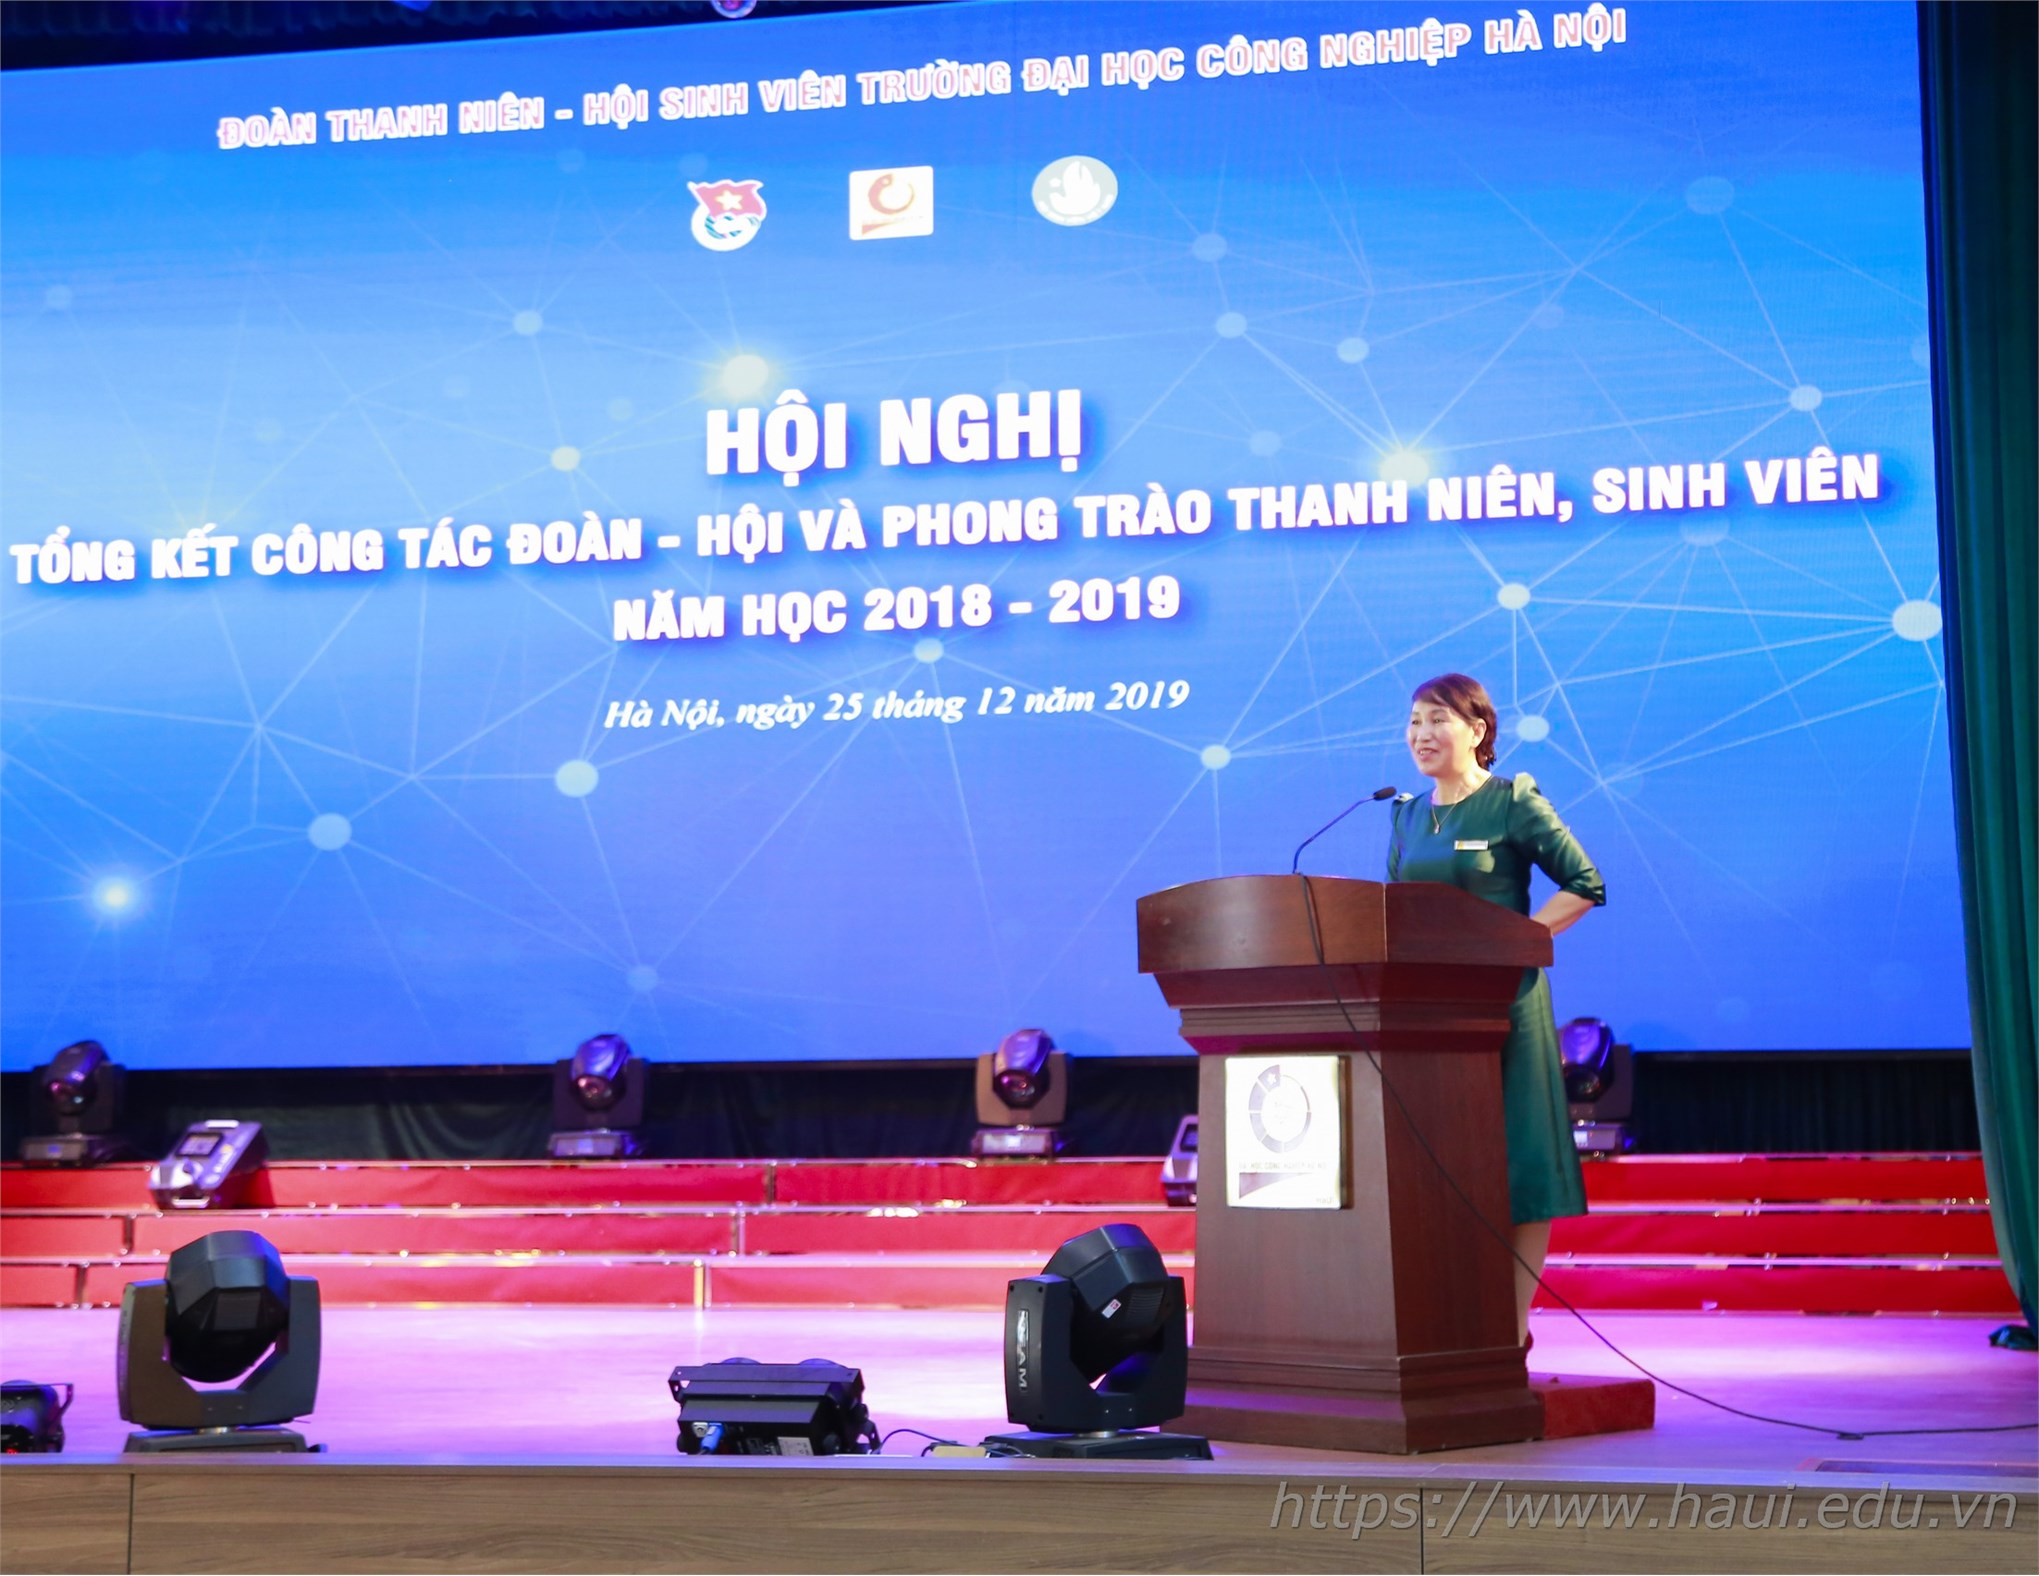 Đại học Công nghiệp Hà Nội tổng kết công tác Đoàn - Hội và Phong trào thanh niên sinh viên năm học 2018 - 2019